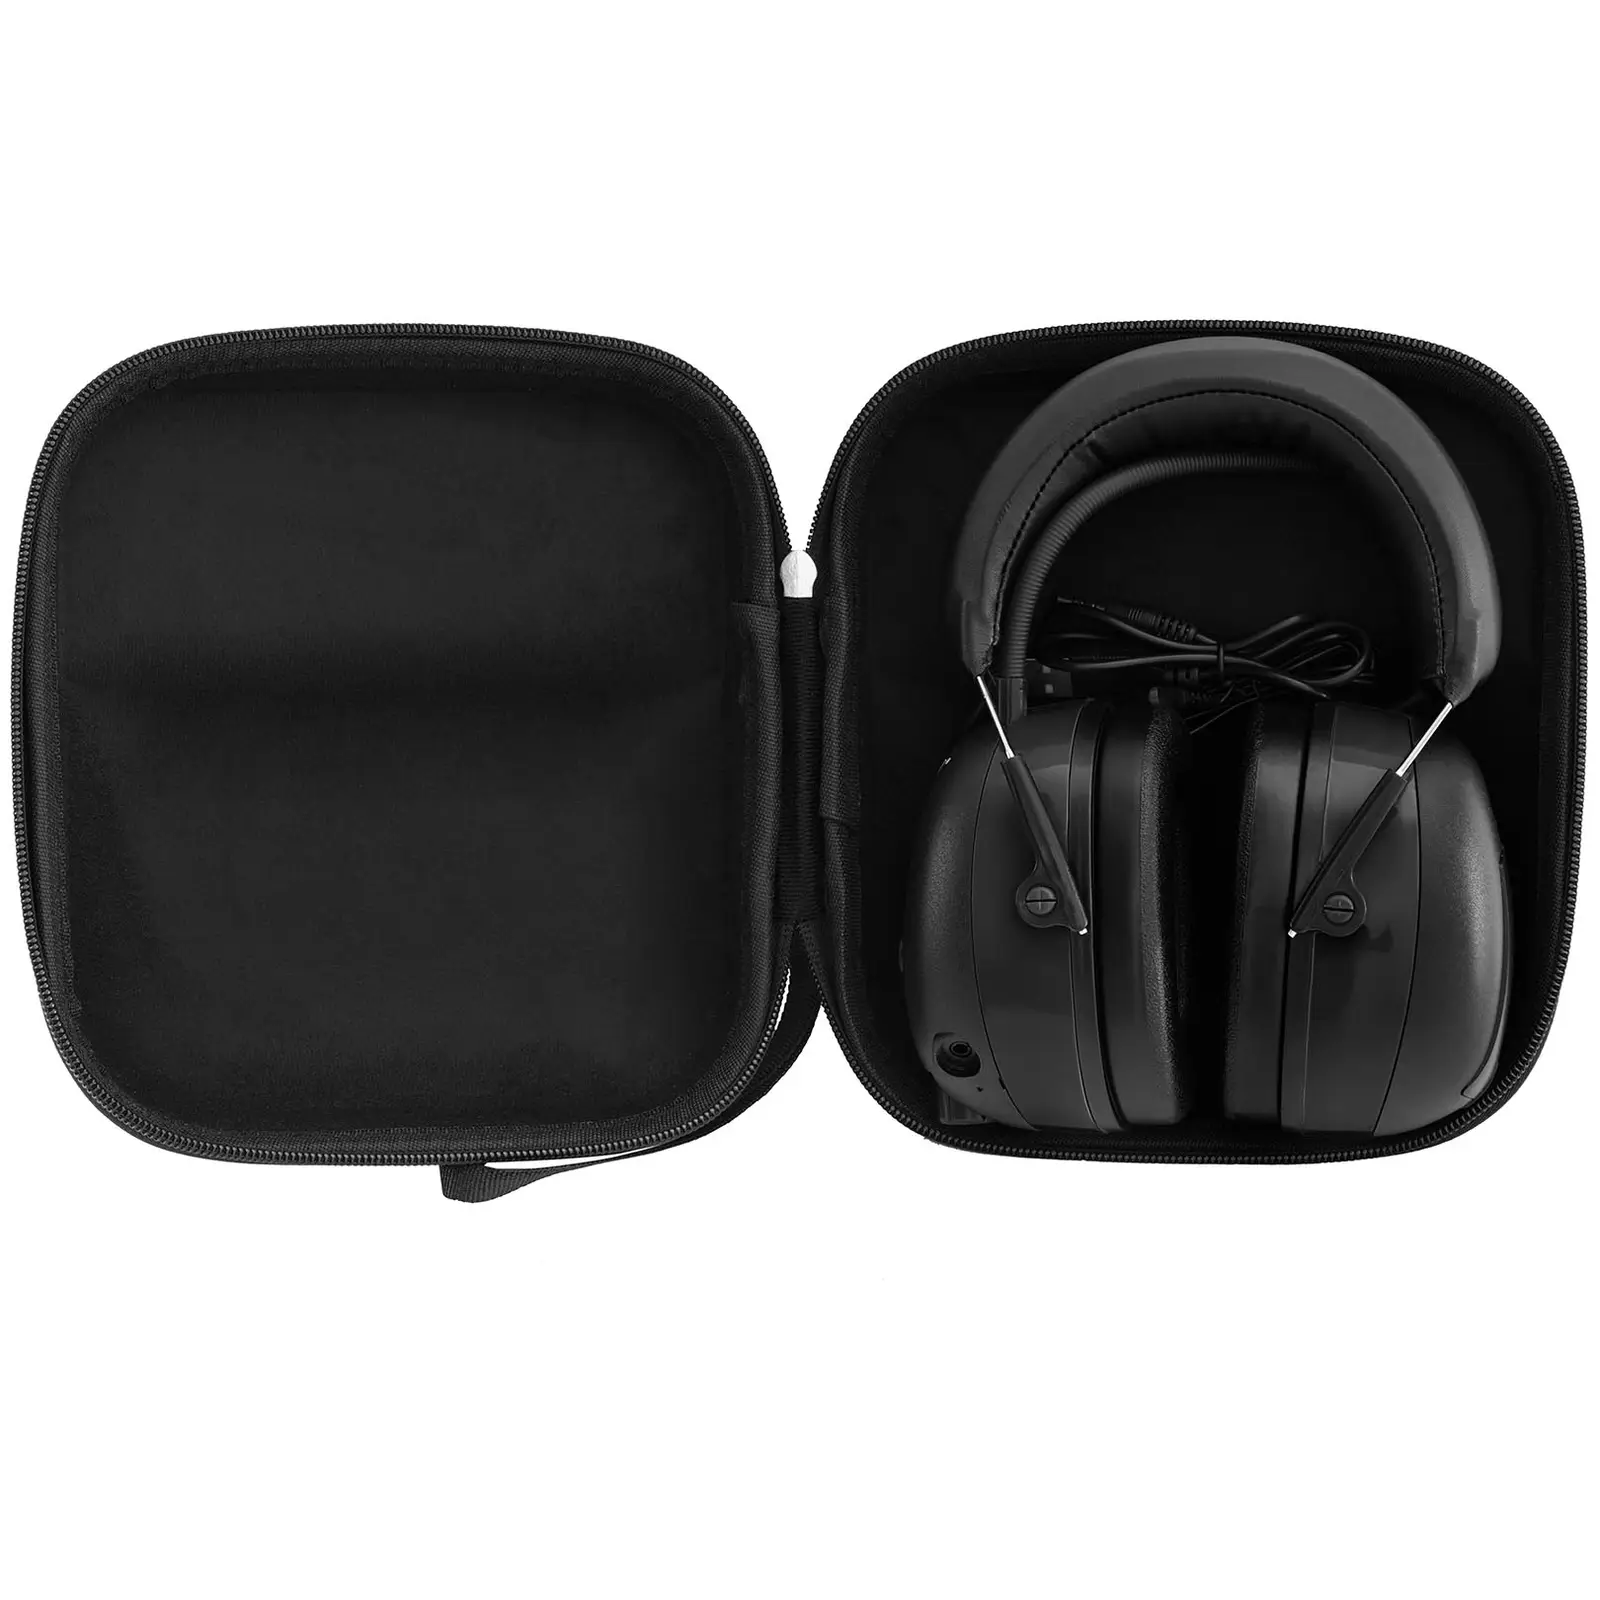 Pracovní sluchátka s Bluetooth - mikrofon - LCD displej - baterie - černá barva